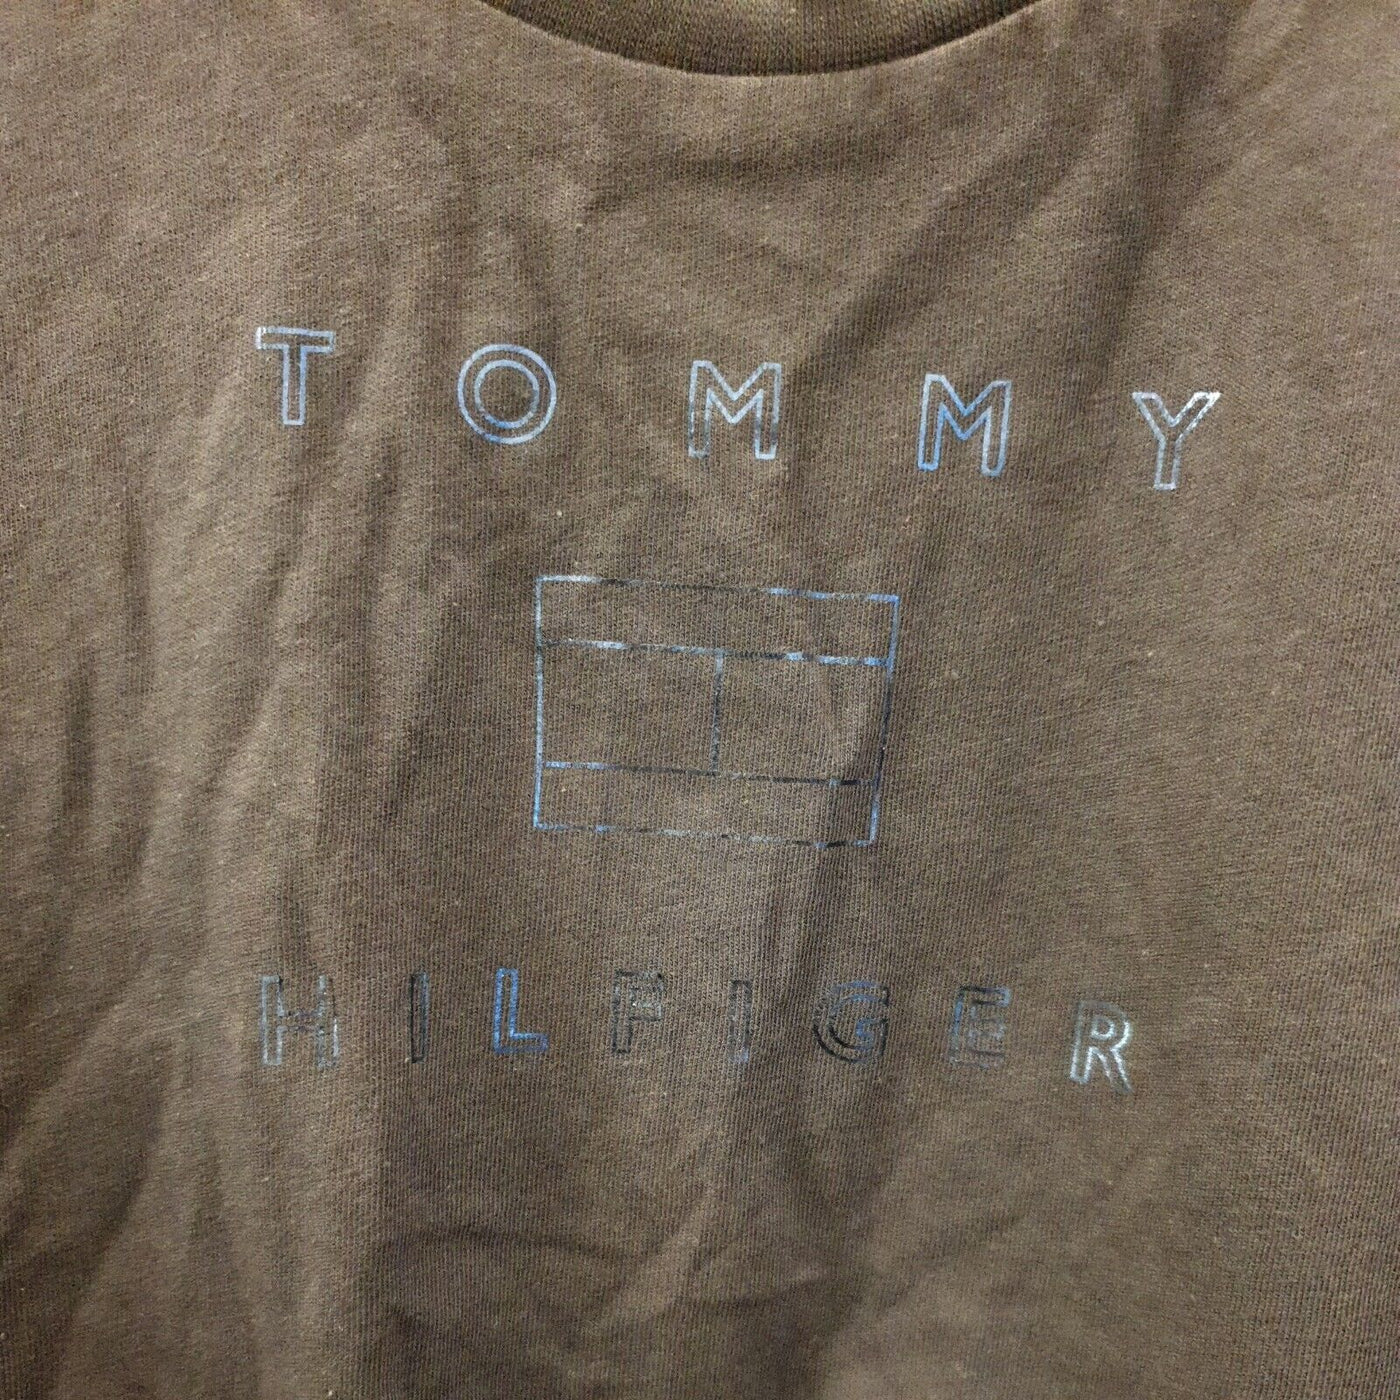 Tommy Hilfiger Blue Crop Tshirt Size 6yrs****Ref V110